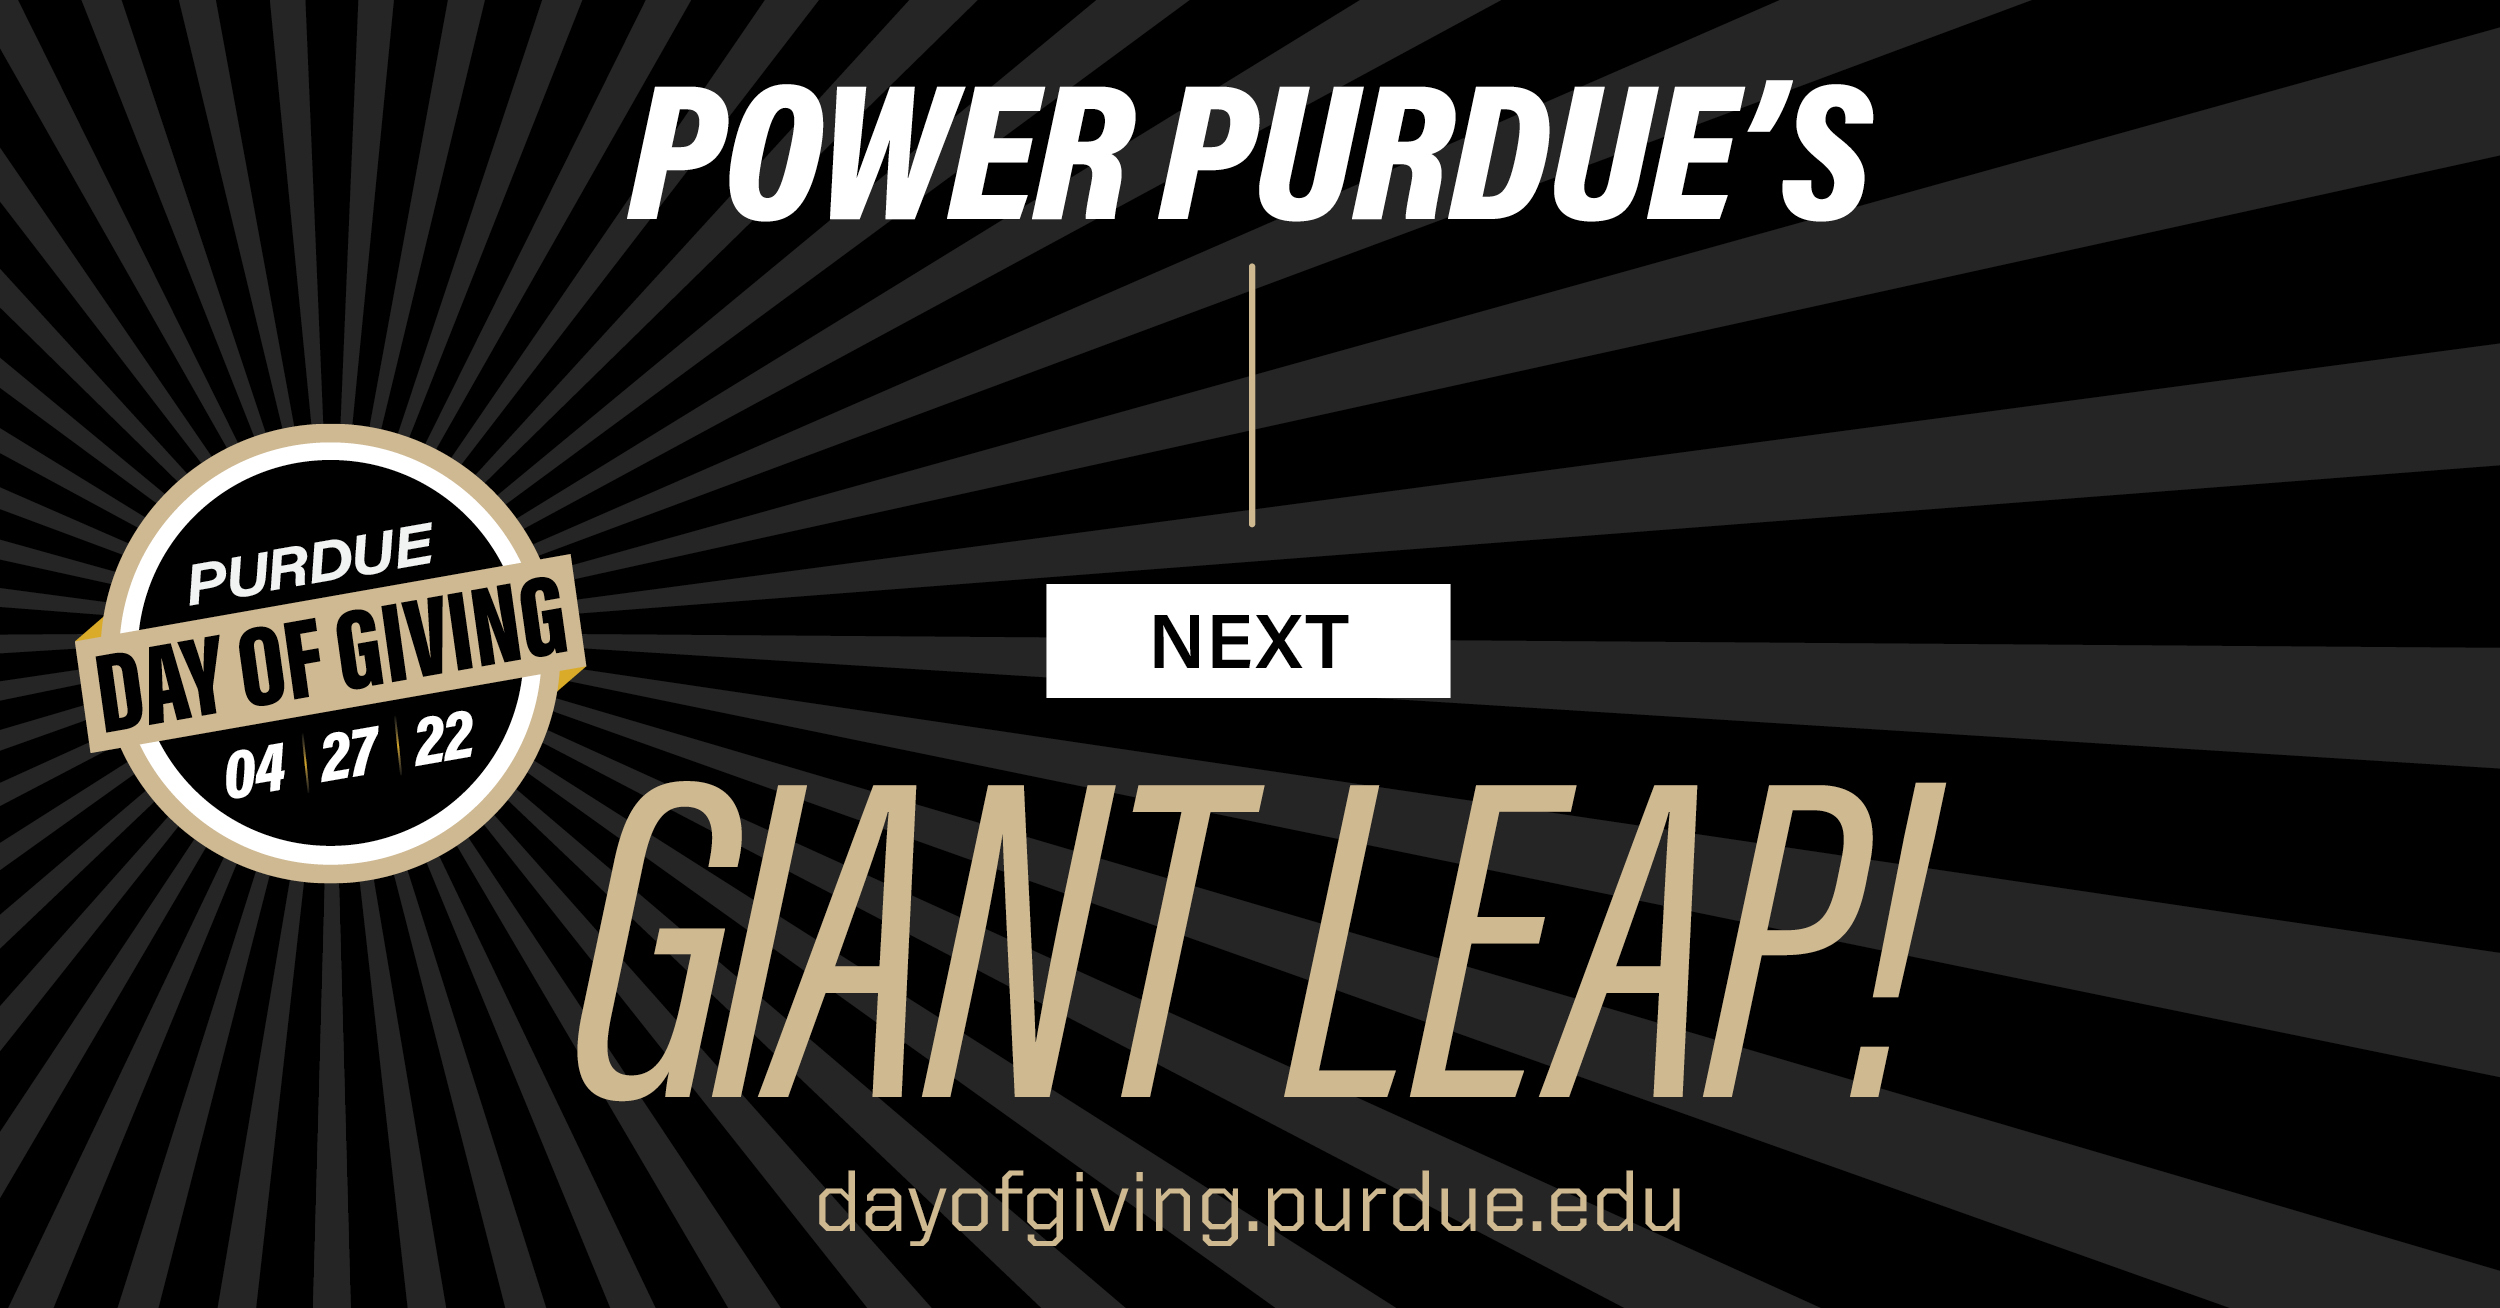 Power Purdue's Next Giant Leap! dayofgiving.purdue.edu